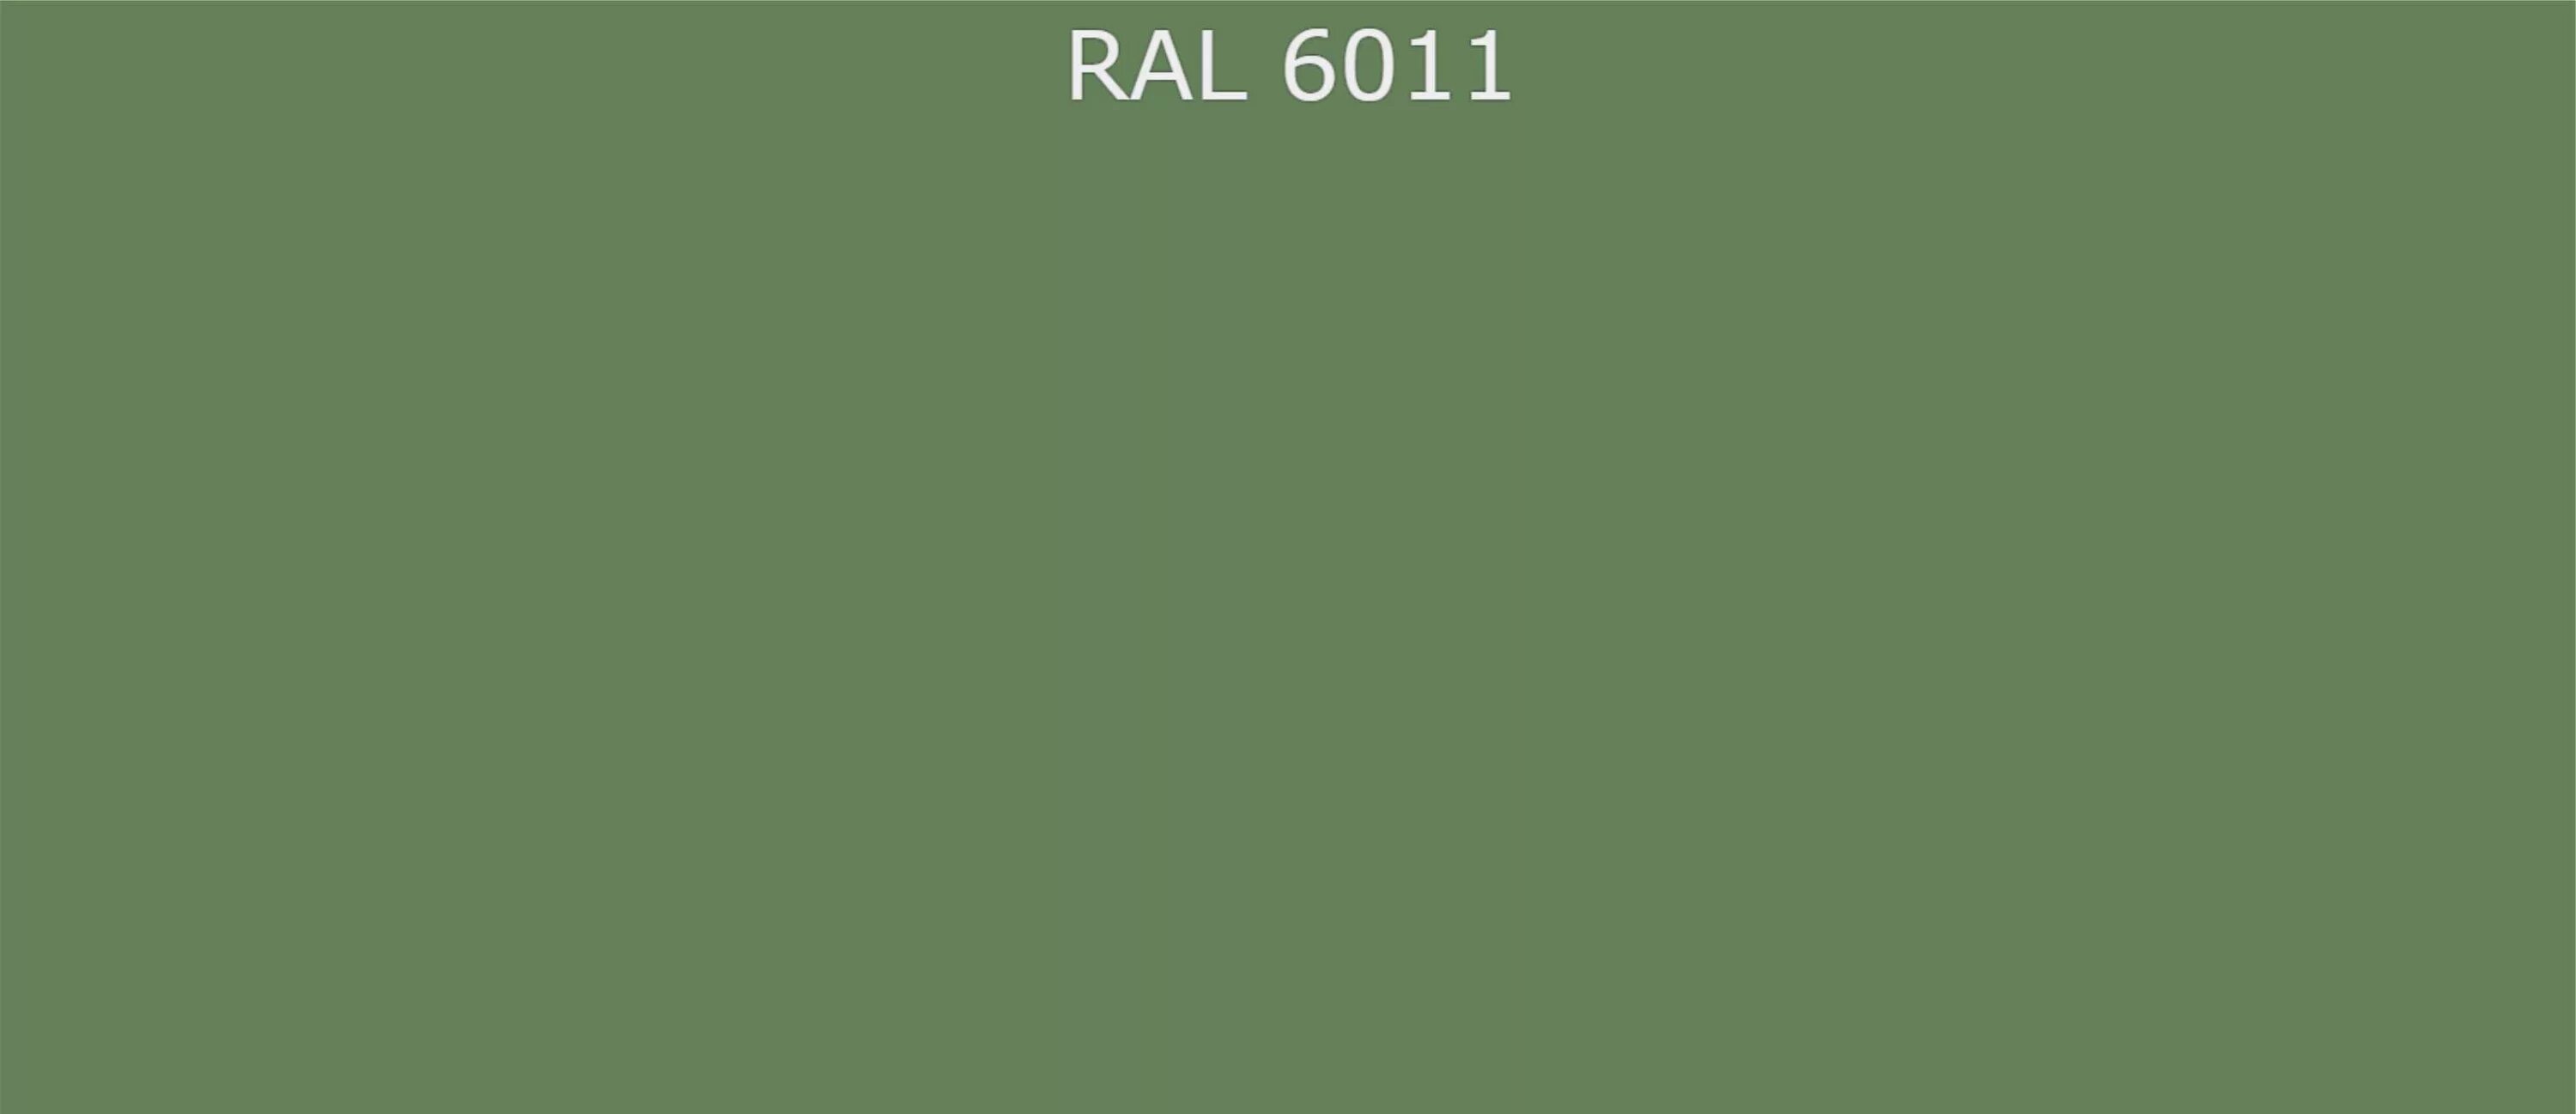 Новый рал 7 читать полностью. RAL 6011 цвет. RAL 6011 краска. Палитра RAL 6011 Резедово зеленый. RAL 6011 Резедово-зелёный.